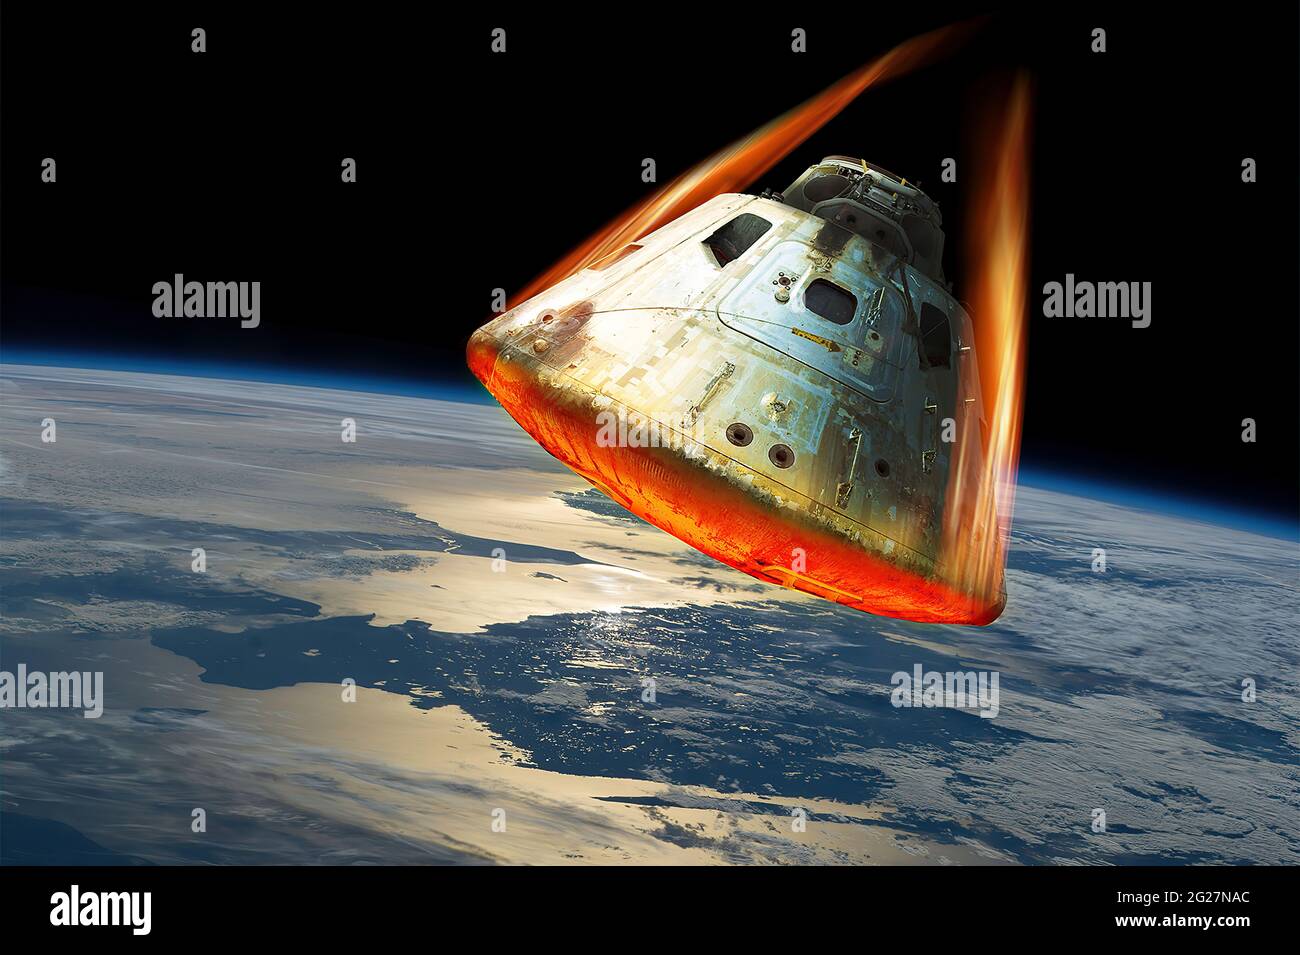 Une capsule d'espace pénètre dans l'atmosphère de la Terre tandis que son écran thermique brille de la chaleur. Banque D'Images